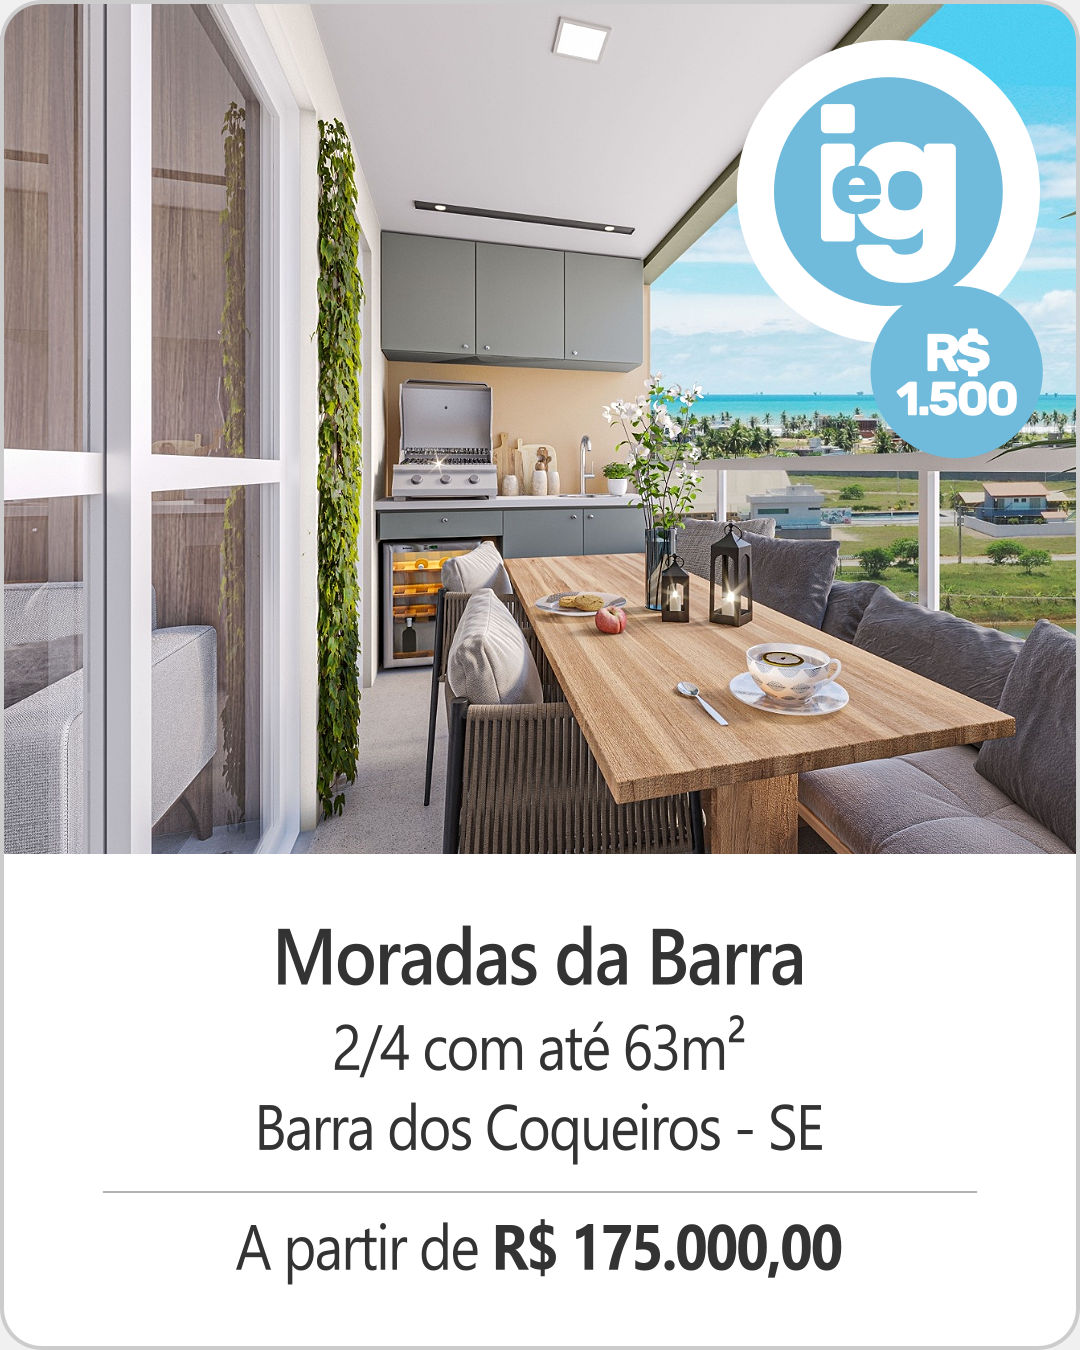 #moradasdabarra